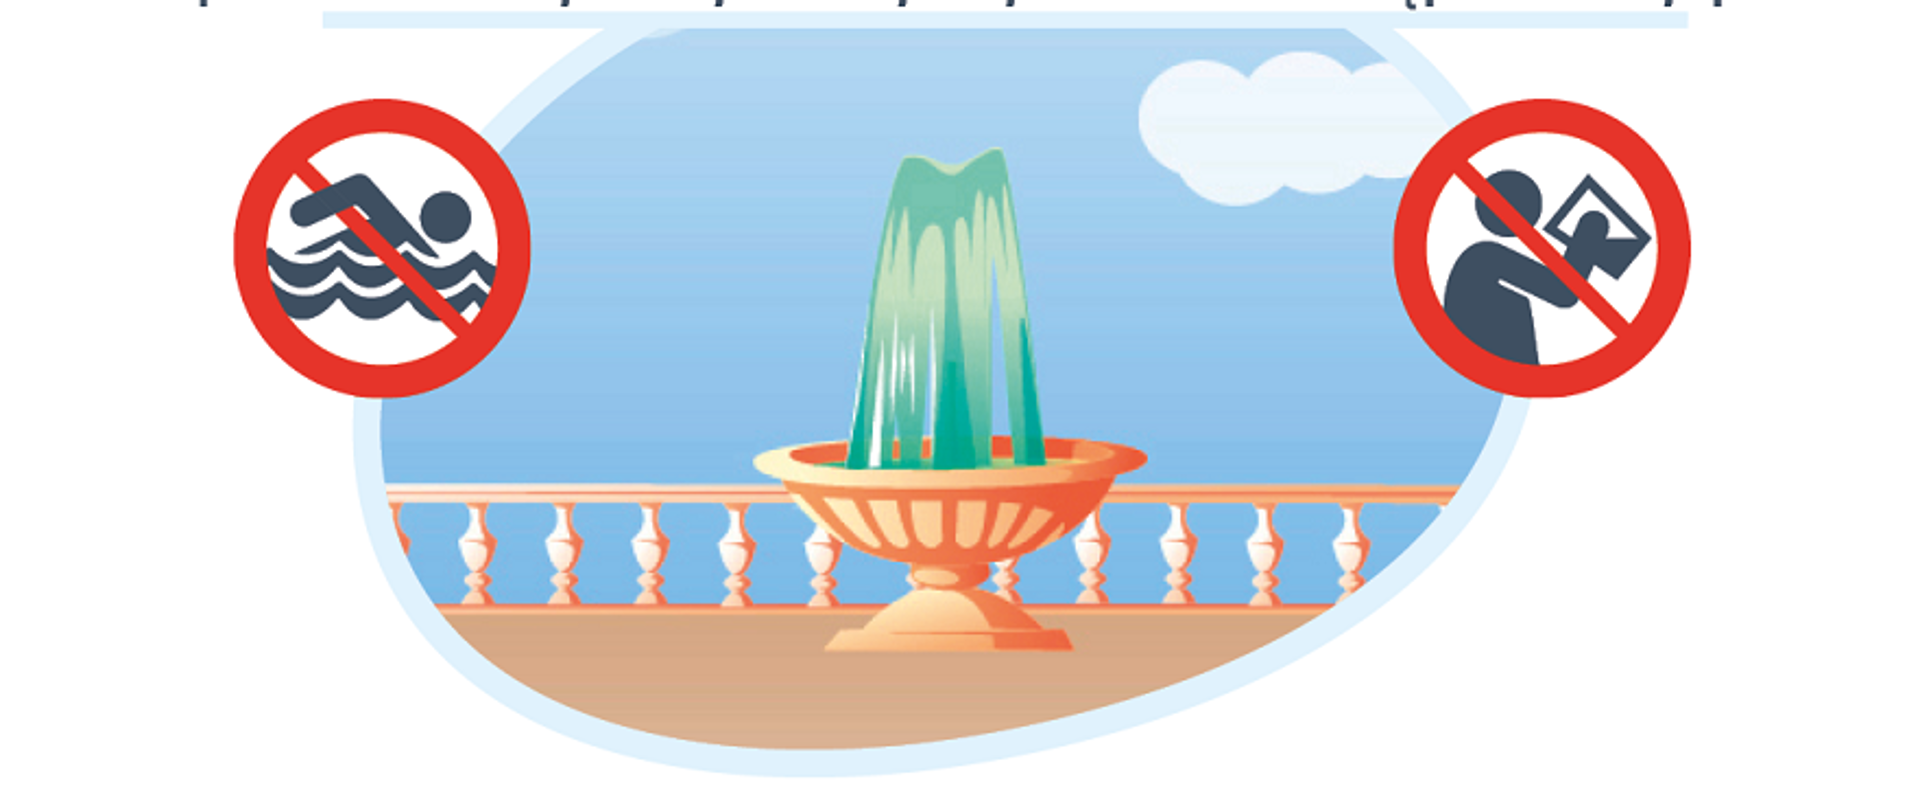  obrazek fontanny z dwoma po boku piktogram przedstawiającymi zakaz pływania - z lewej strony oraz zakaz picia z prawe j strony.